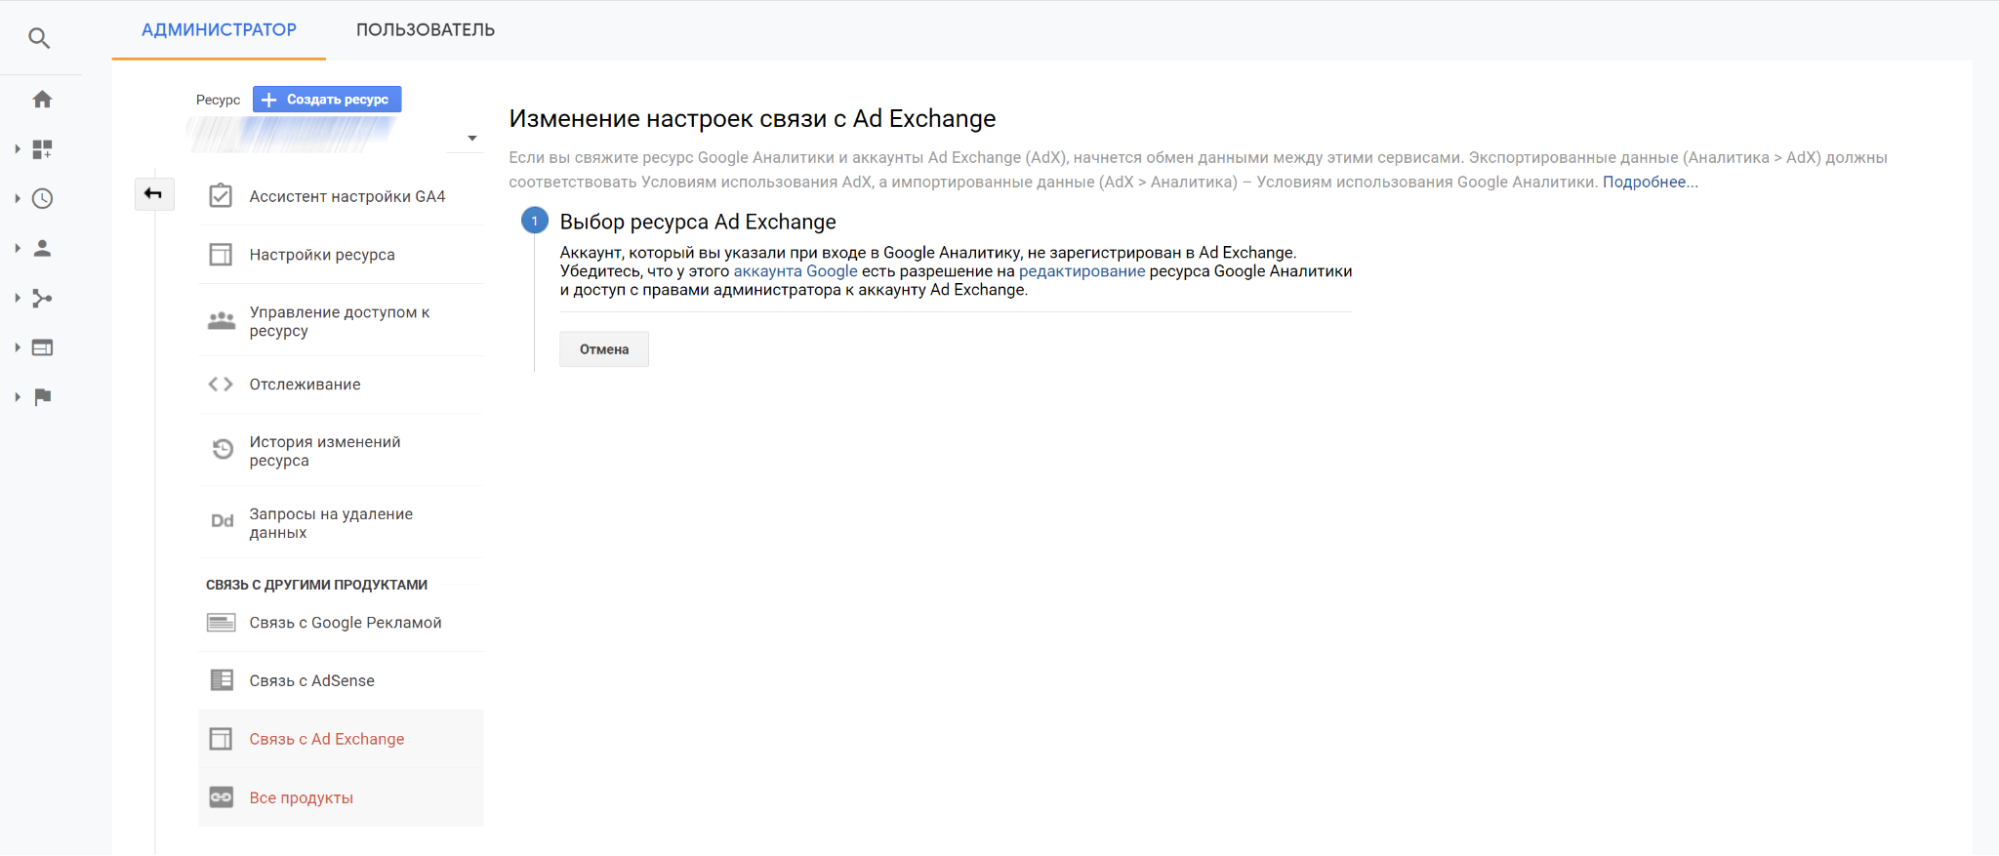 Аккаунт, указанный в качестве логина Google Analytics, должен быть зарегистрирован в Ad Exchange